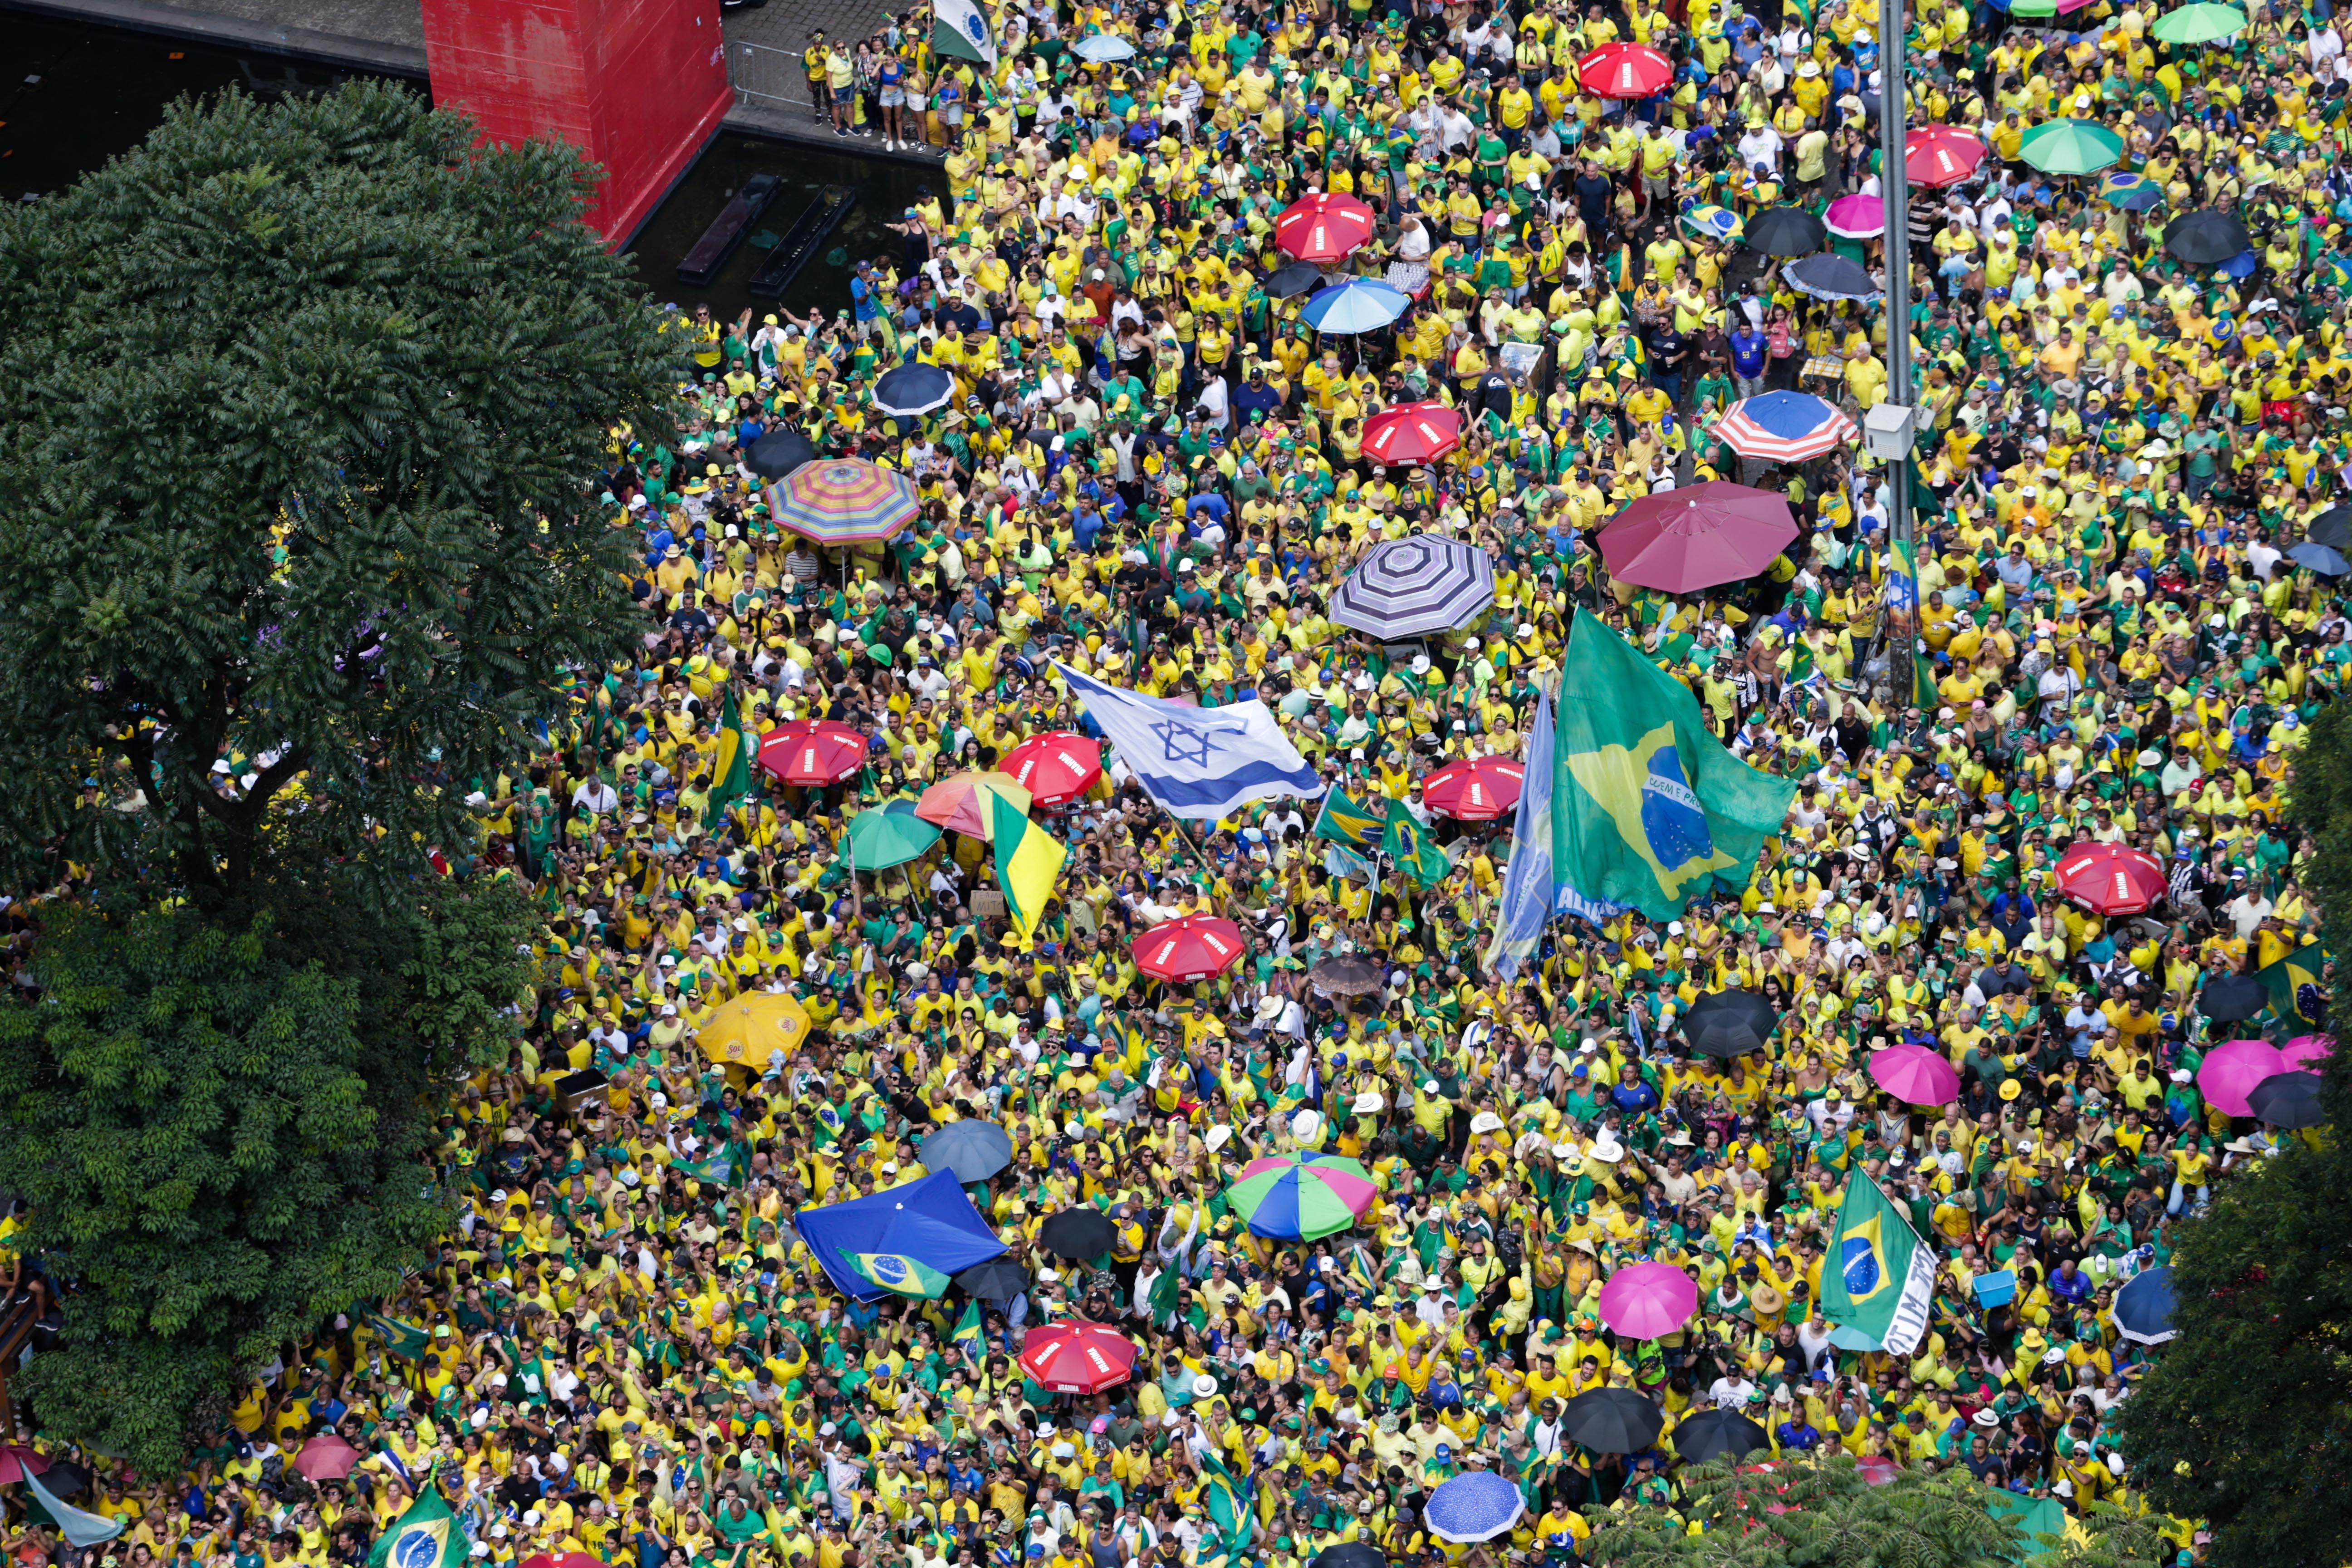 Apoiadores do ex-presidente Jair Bolsonaro (PL) se concentram para ato na Avenida Paulista, em São Paulo. Foto: Tiago Queiroz/Estadão Conteúdo